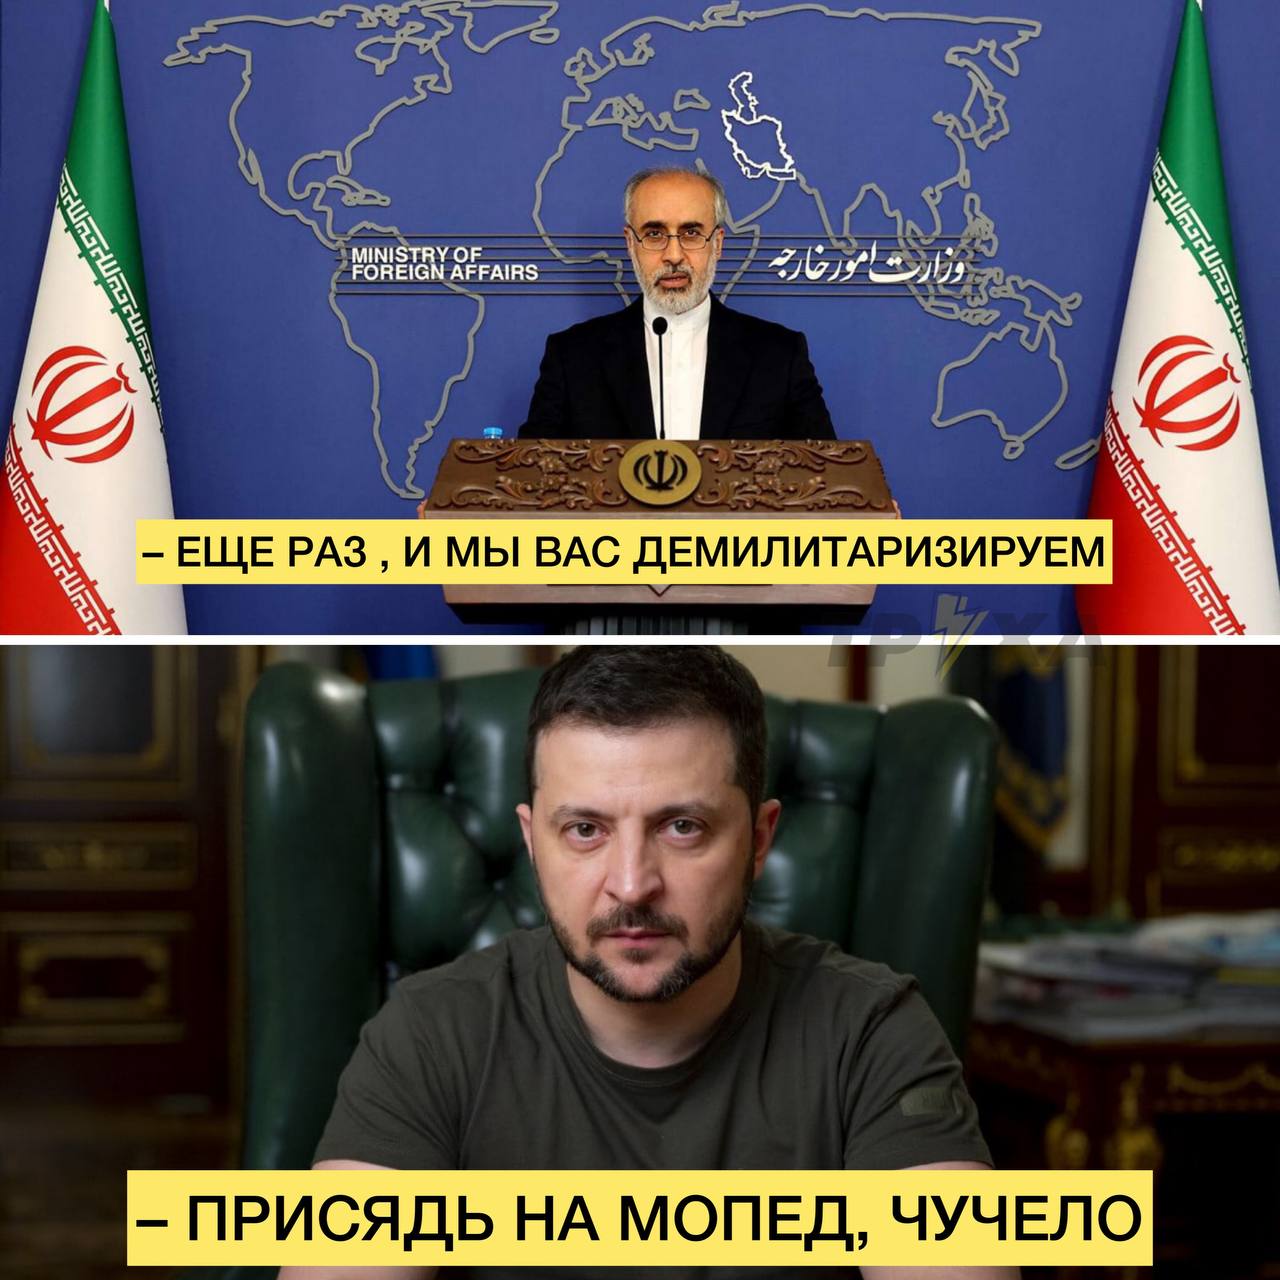 Иран угрожает Украине из-за речи Зеленского в Конгрессе